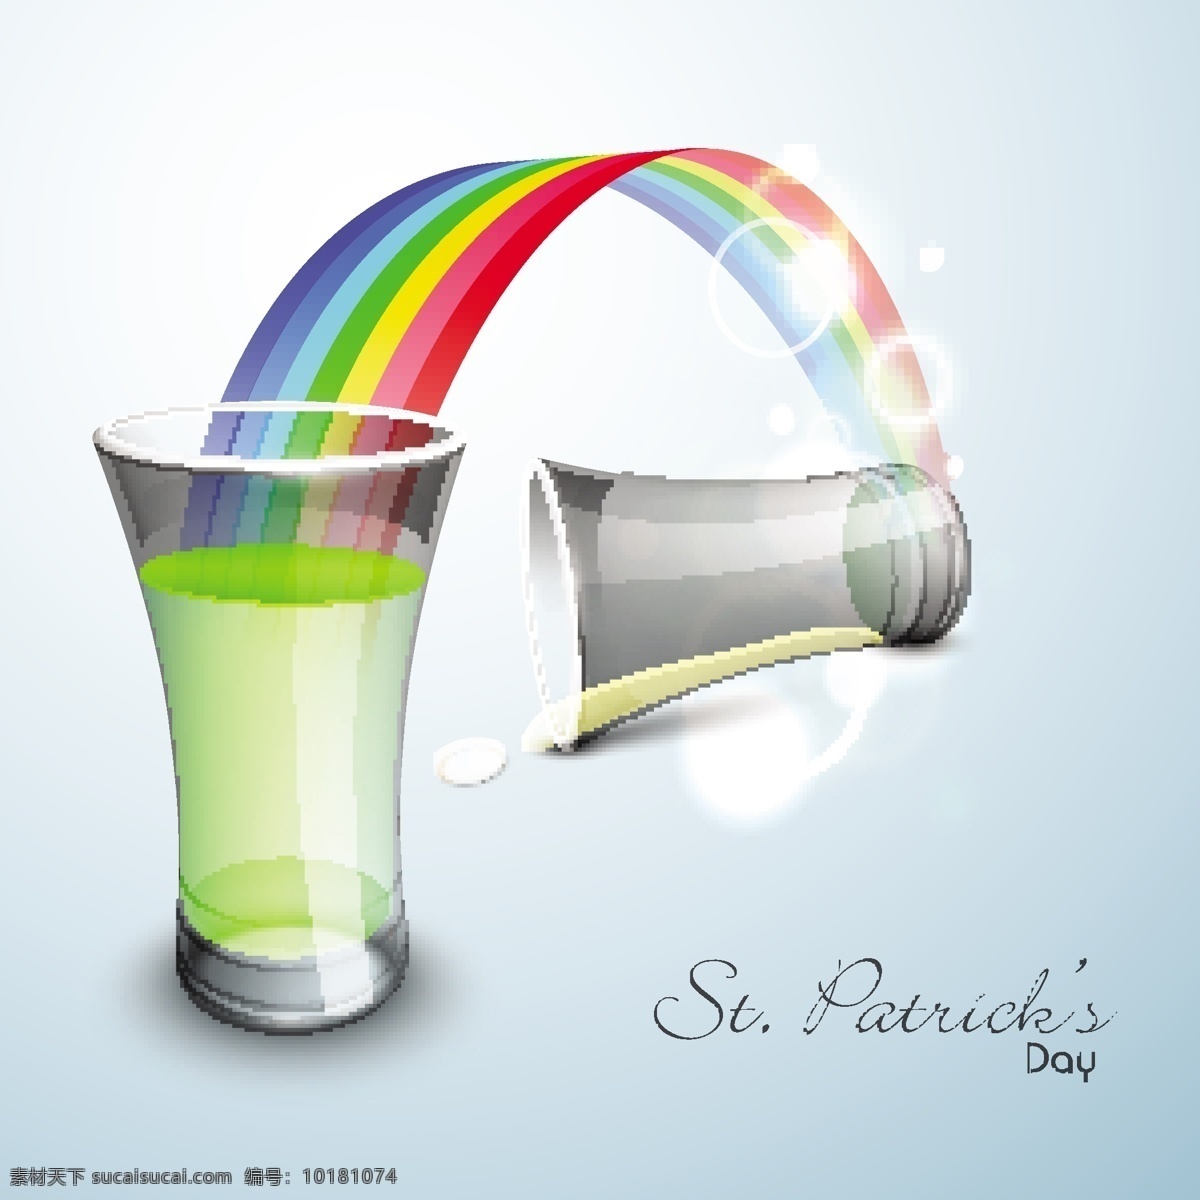 快乐 圣 巴特里克 节 概念 光泽 灰色 背景 彩虹 玻璃 啤酒 白色